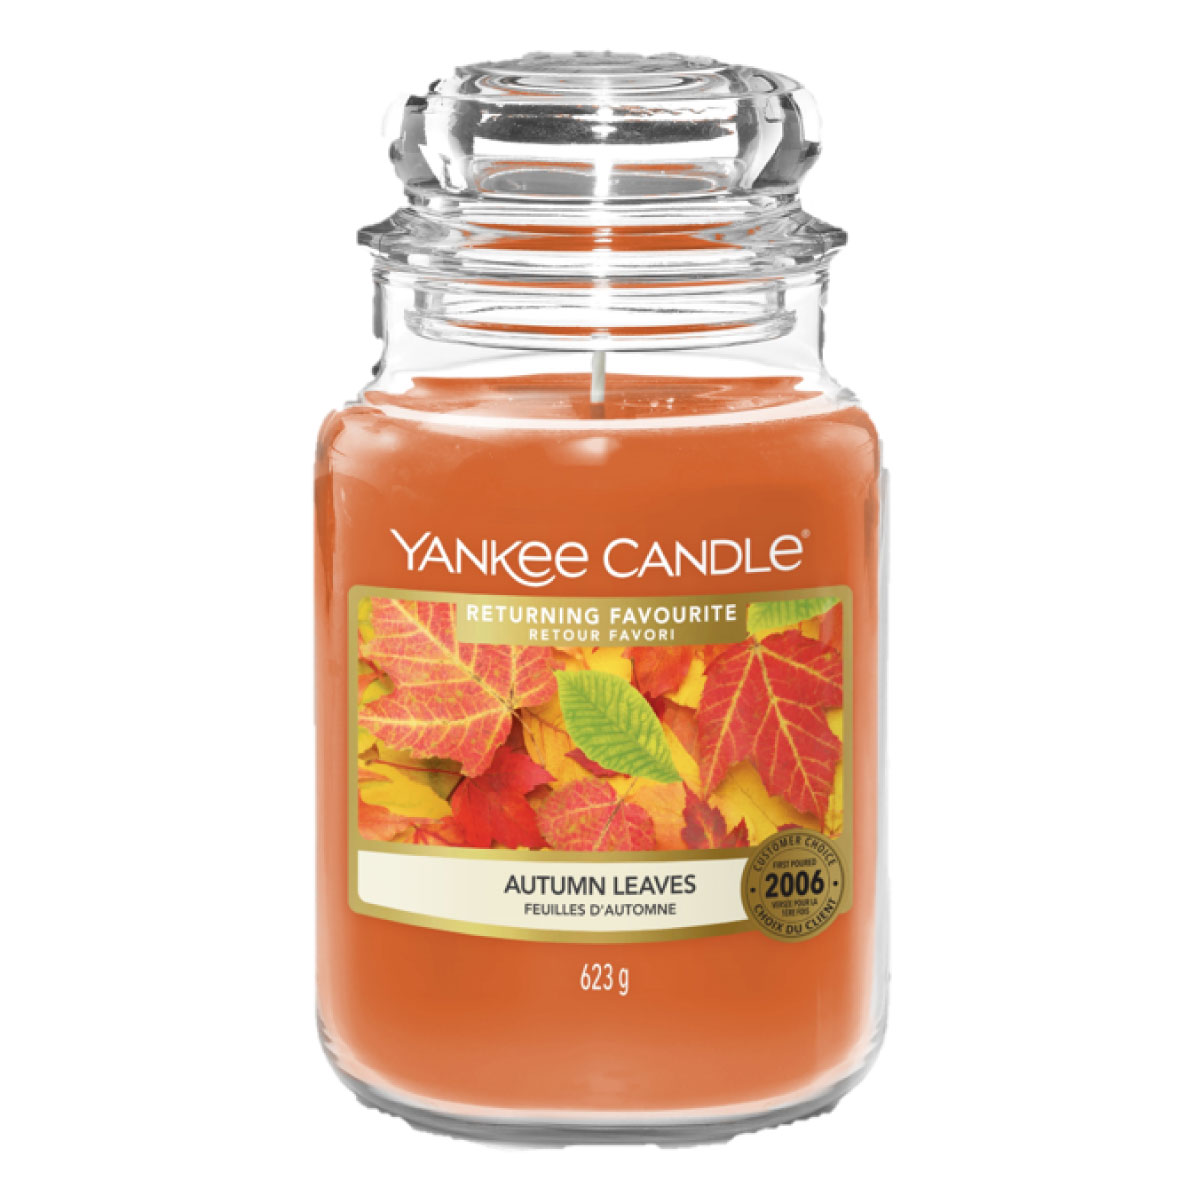 Autumn Leaves - Returning Favourite - Duftkerze im Glas 623g - Yankee Candle®